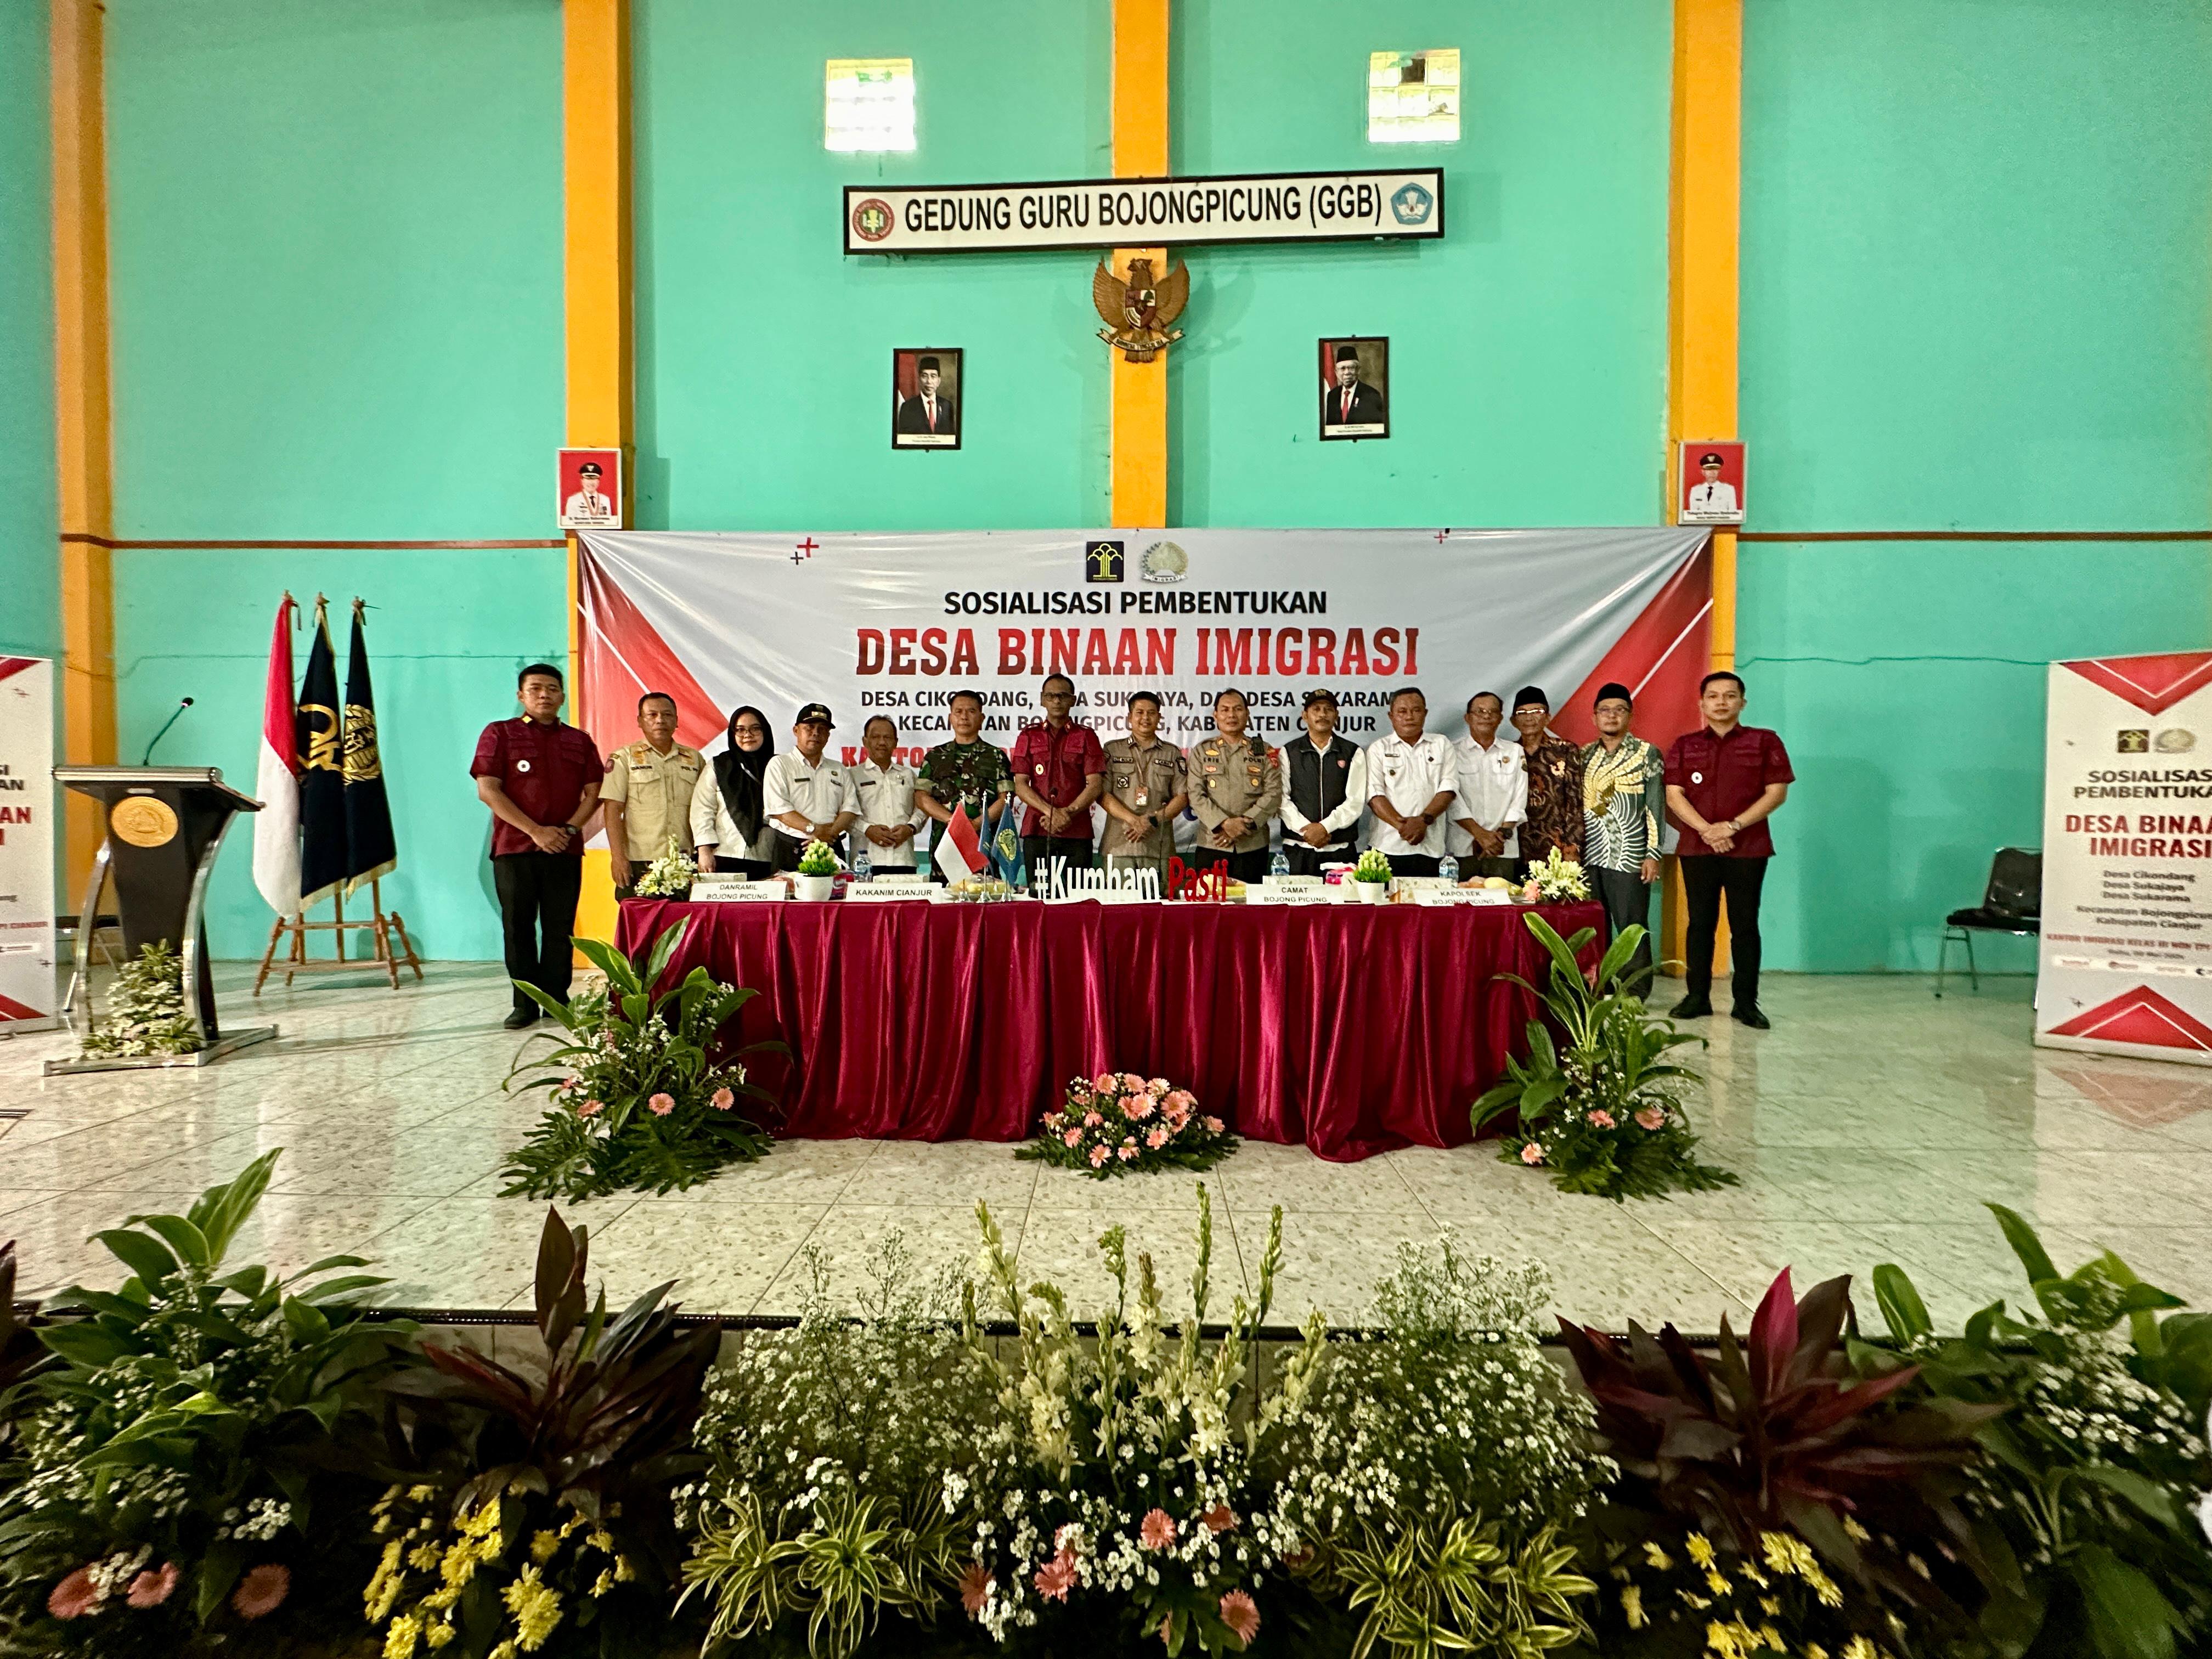 Lindungi CPMI, Imigrasi Cianjur Sosialisasi Pembentukan Desa Binaan Imigrasi